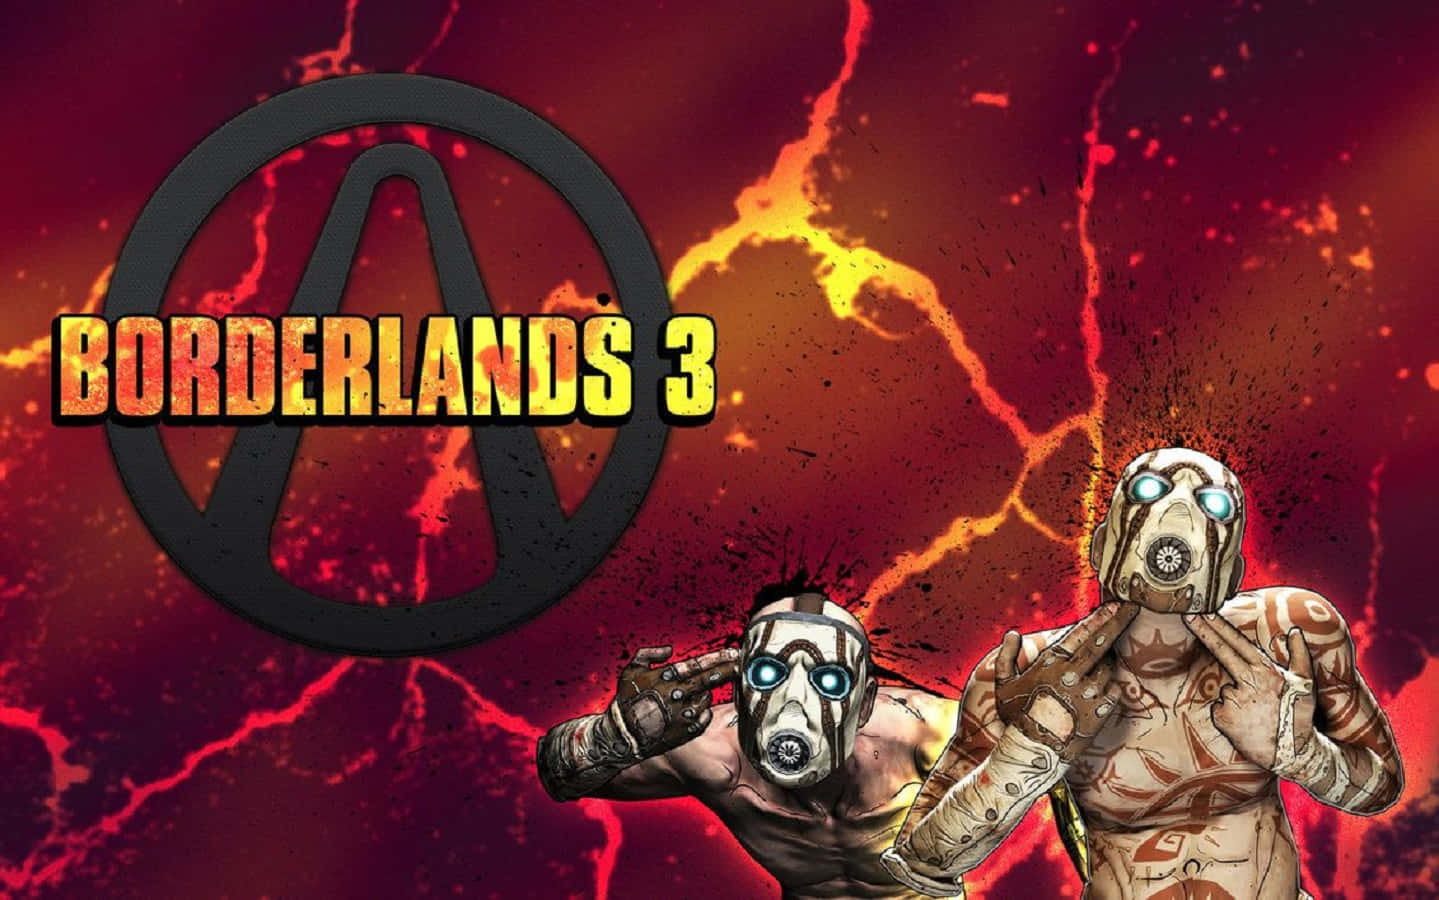 Borderlands 3 Action-Packed Battle Scene